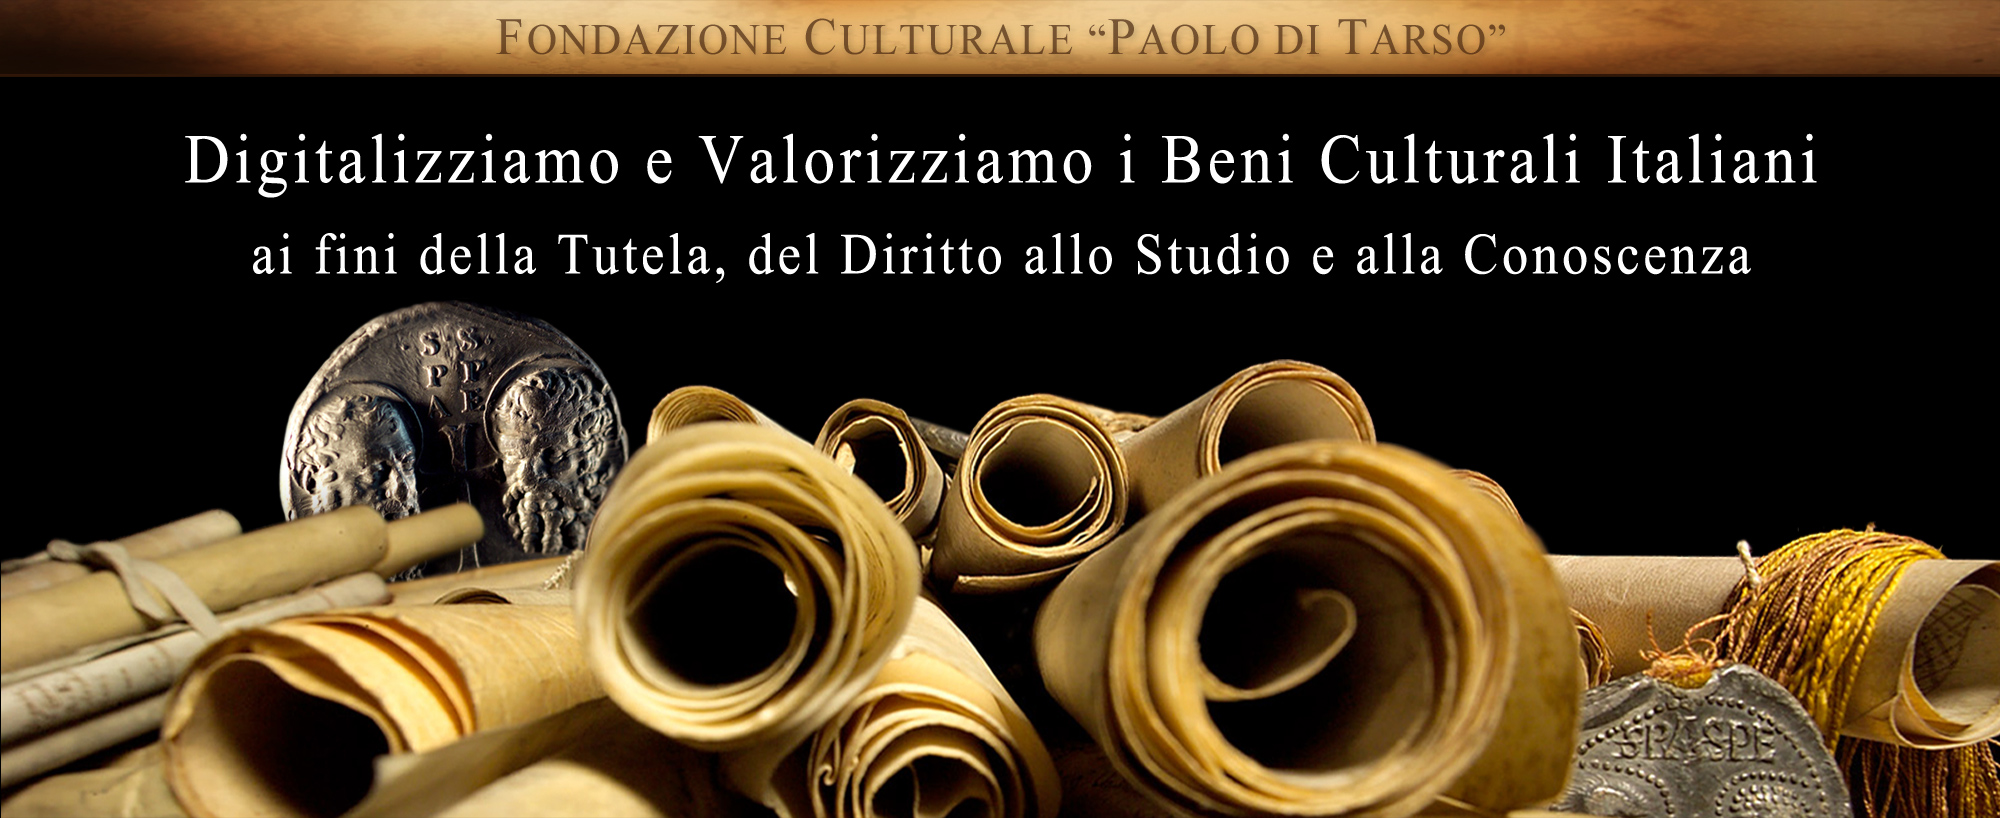 Fondazione Culturale "Paolo di Tarso"